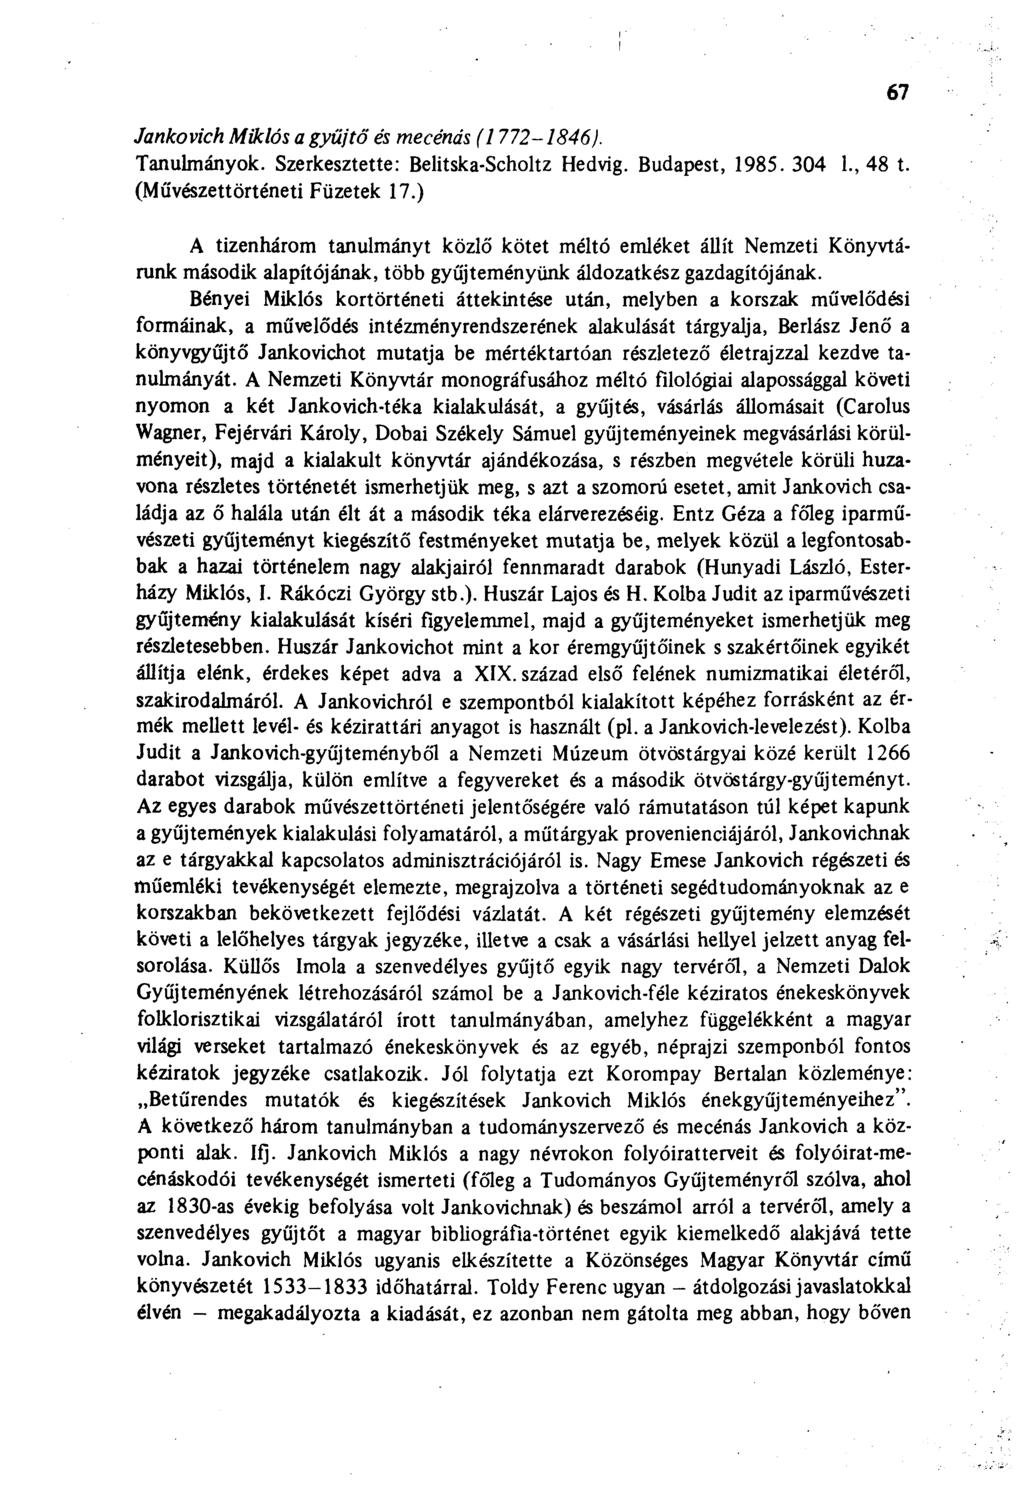 Jankovich Miklós a gyűjtő és mecénás (1772-1846). Tanulmányok. Szerkesztette: Belitska-Scholtz Hedvig. Budapest, 1985. 304 1., 48 t. (Művészettörténeti Füzetek 17.